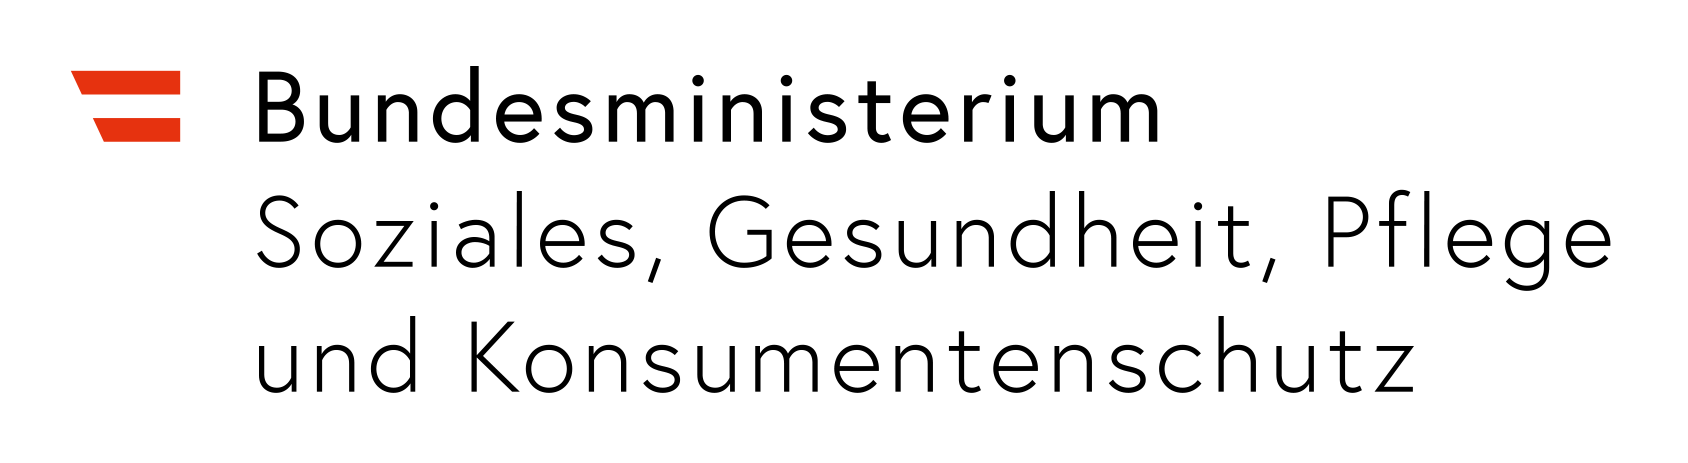 BMSGKP Logo